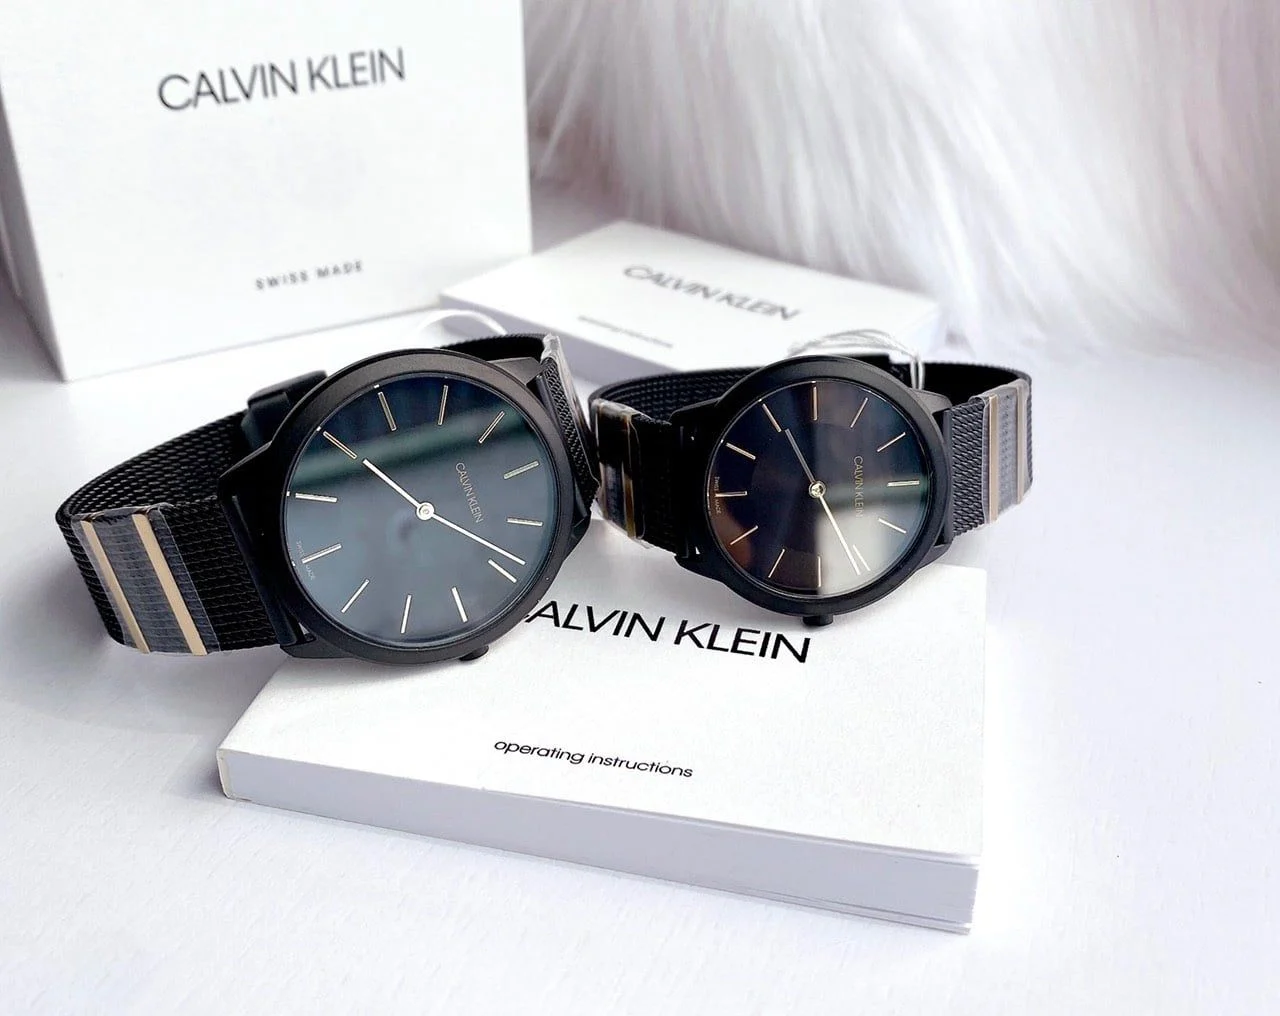 Đồng hồ Calvin Klein đã trở thành một trong những thương hiệu đồng hồ nổi tiếng nhất thế giới